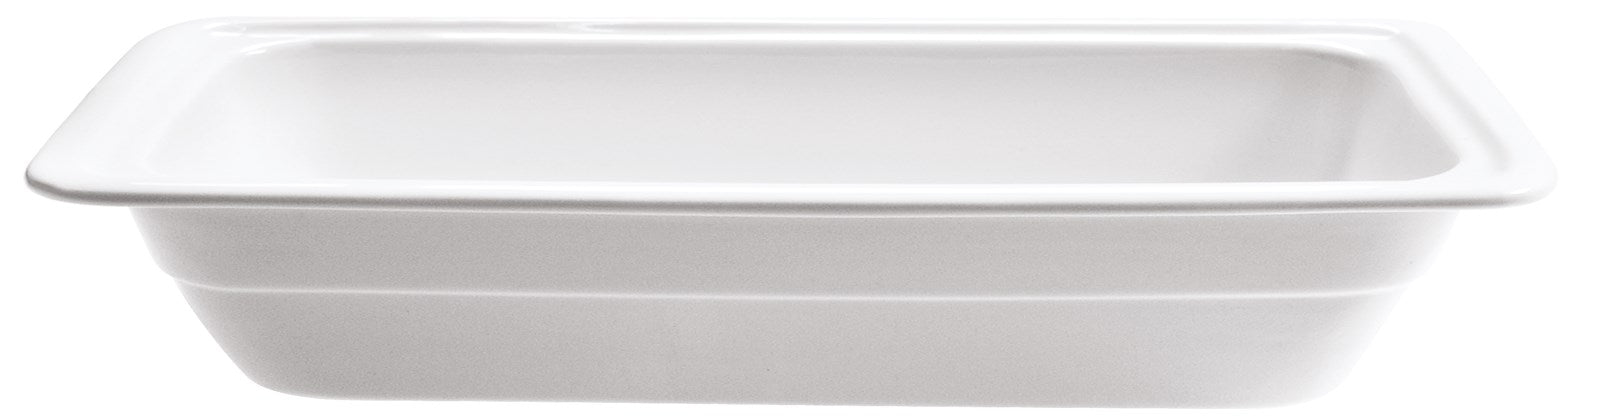 Buffet GN Schalen Porzellan 2/4 53x16.2cm H4cm in Weiss präsentiert im Onlineshop von KAQTU Design AG. Schale ist von Diverse